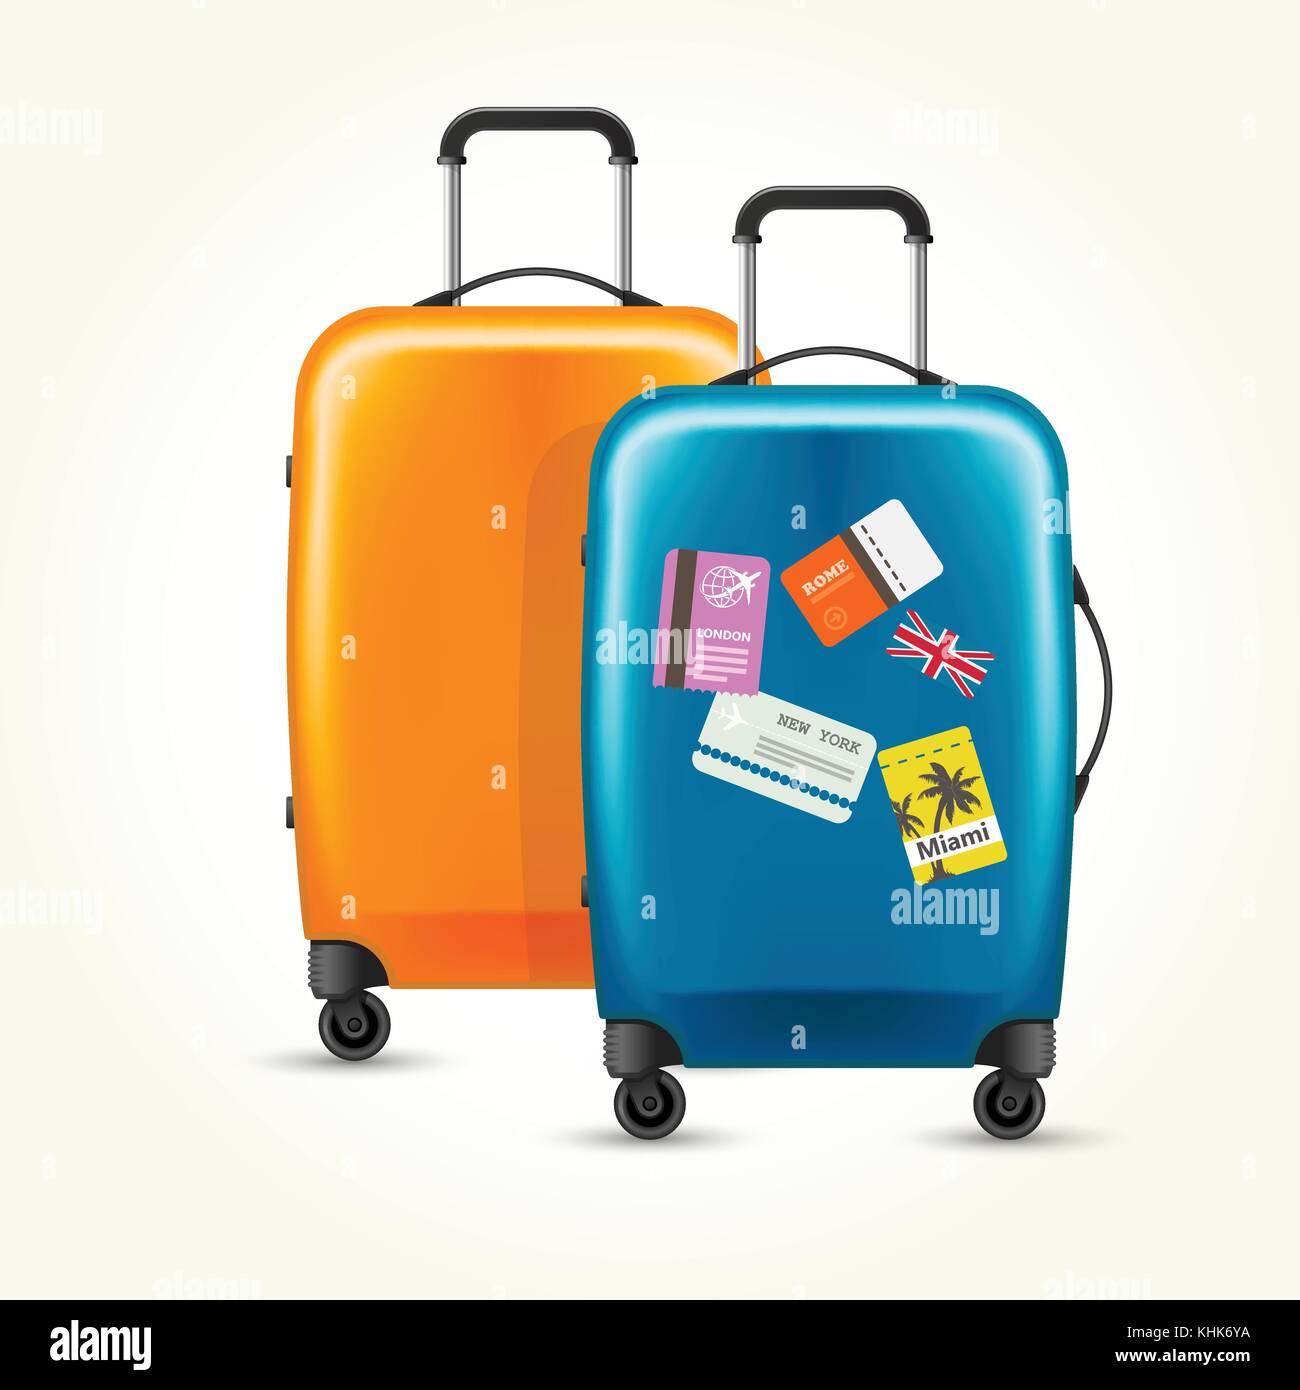 Valigia New Delhi valigie da viaggio valigie su ruote bagaglio